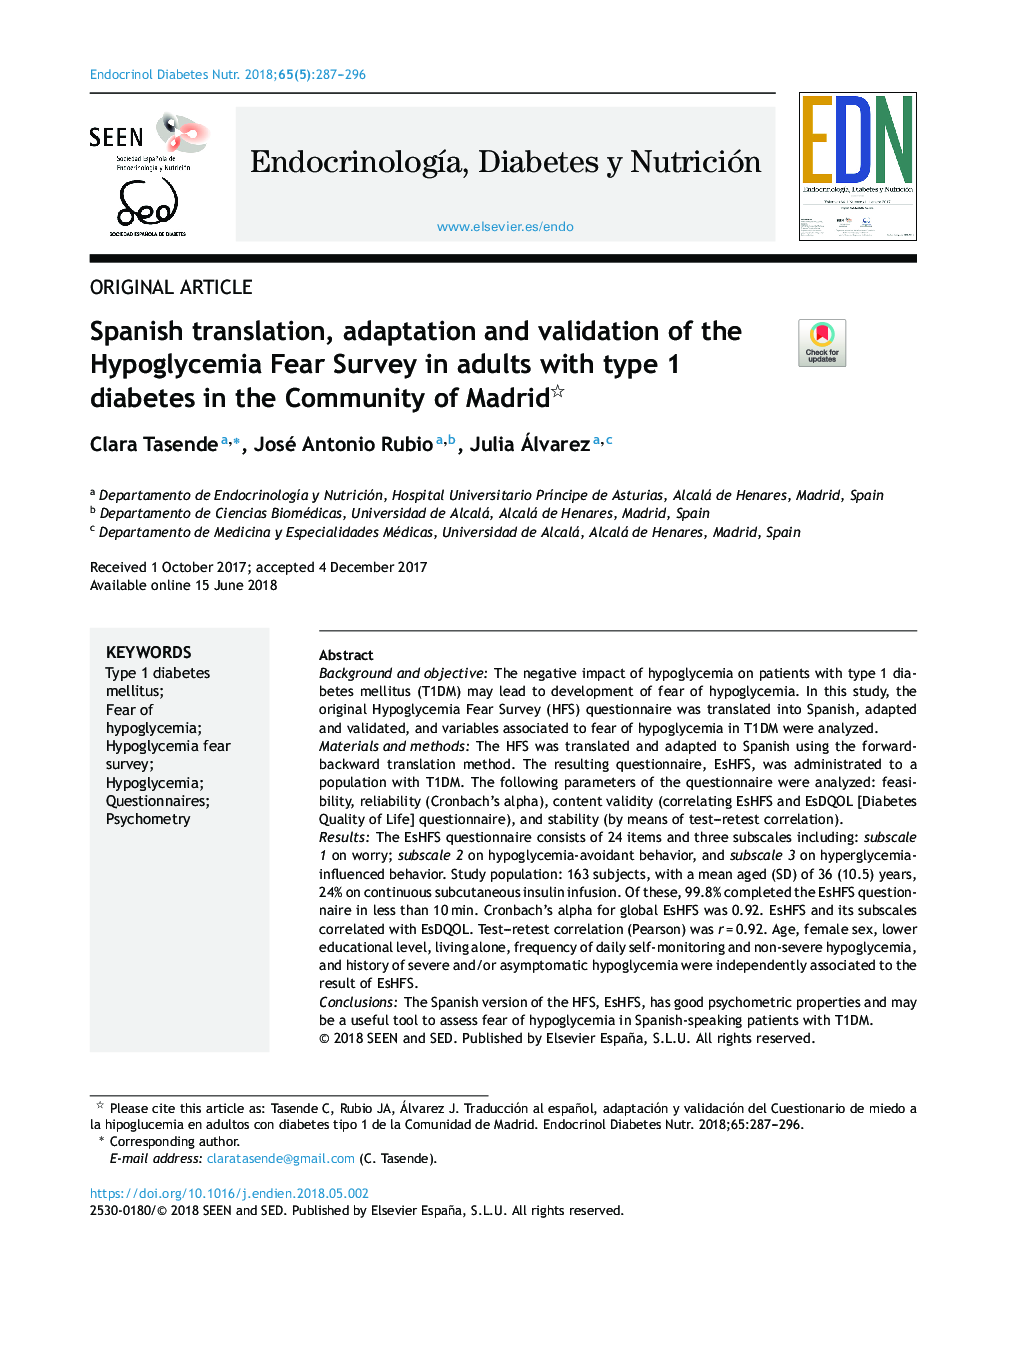 ترجمه اسپانیایی، تطبیق و اعتبار سنجی هورمون هیپوگلیسمی در بزرگسالان مبتلا به دیابت نوع 1 در جامعه مادرید